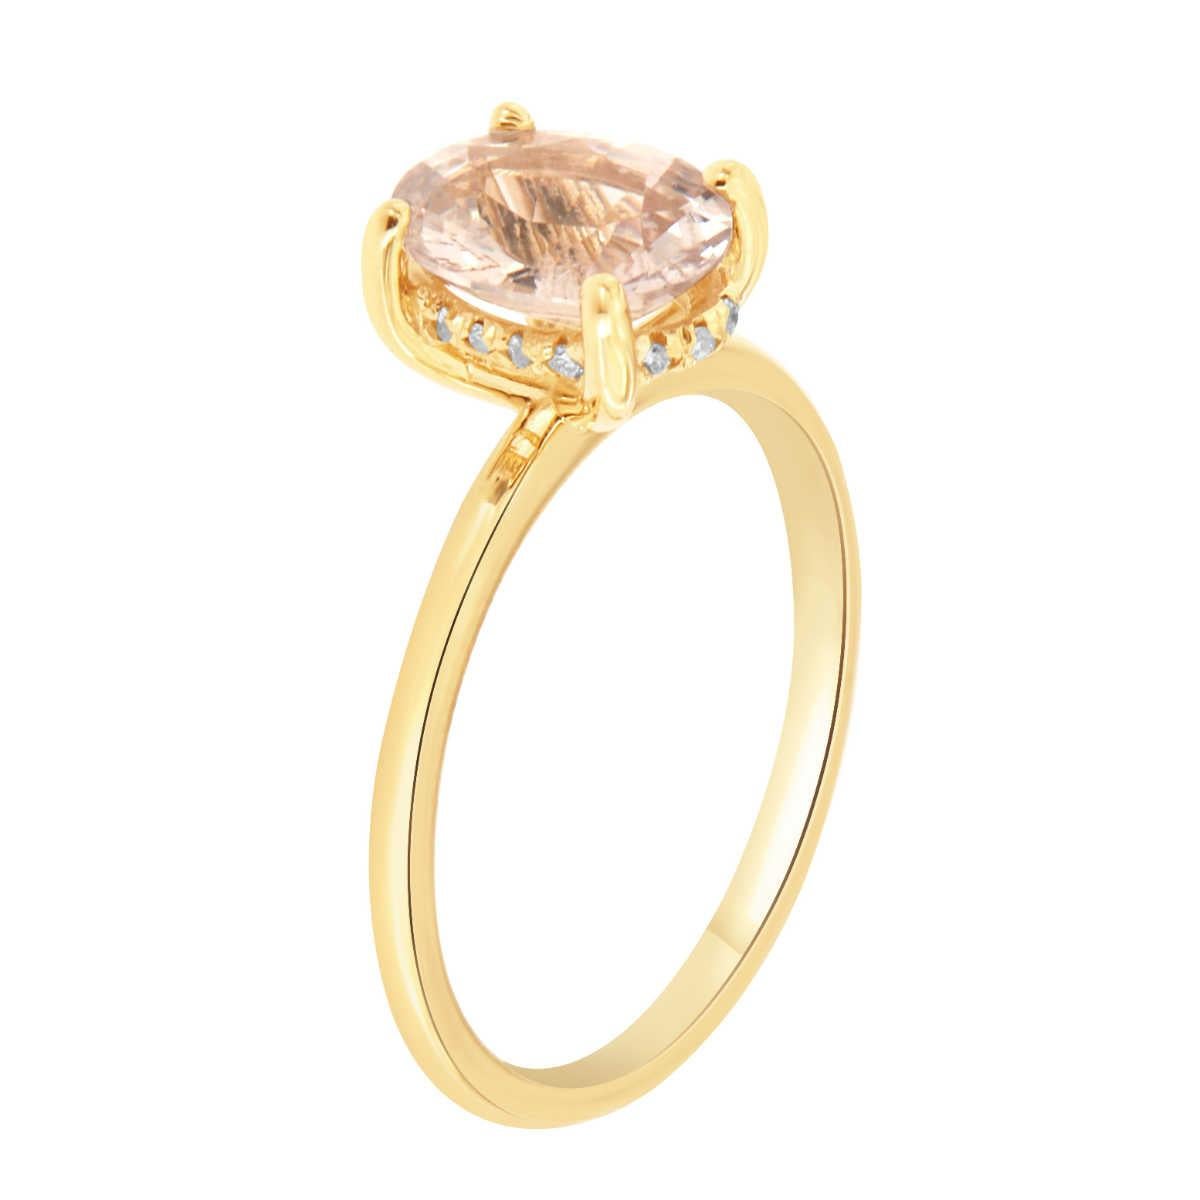 Dieser Ring aus 14-karätigem Gelbgold zeigt eine seltene  GIA-zertifizierter 1,77-karätiger ovaler, unerhitzter, sehr hellrosa Saphir aus Sri Lanka. Der seltene Edelstein mit einem Gewicht von 0,15 Karat ist von einem verborgenen Halo aus Diamanten